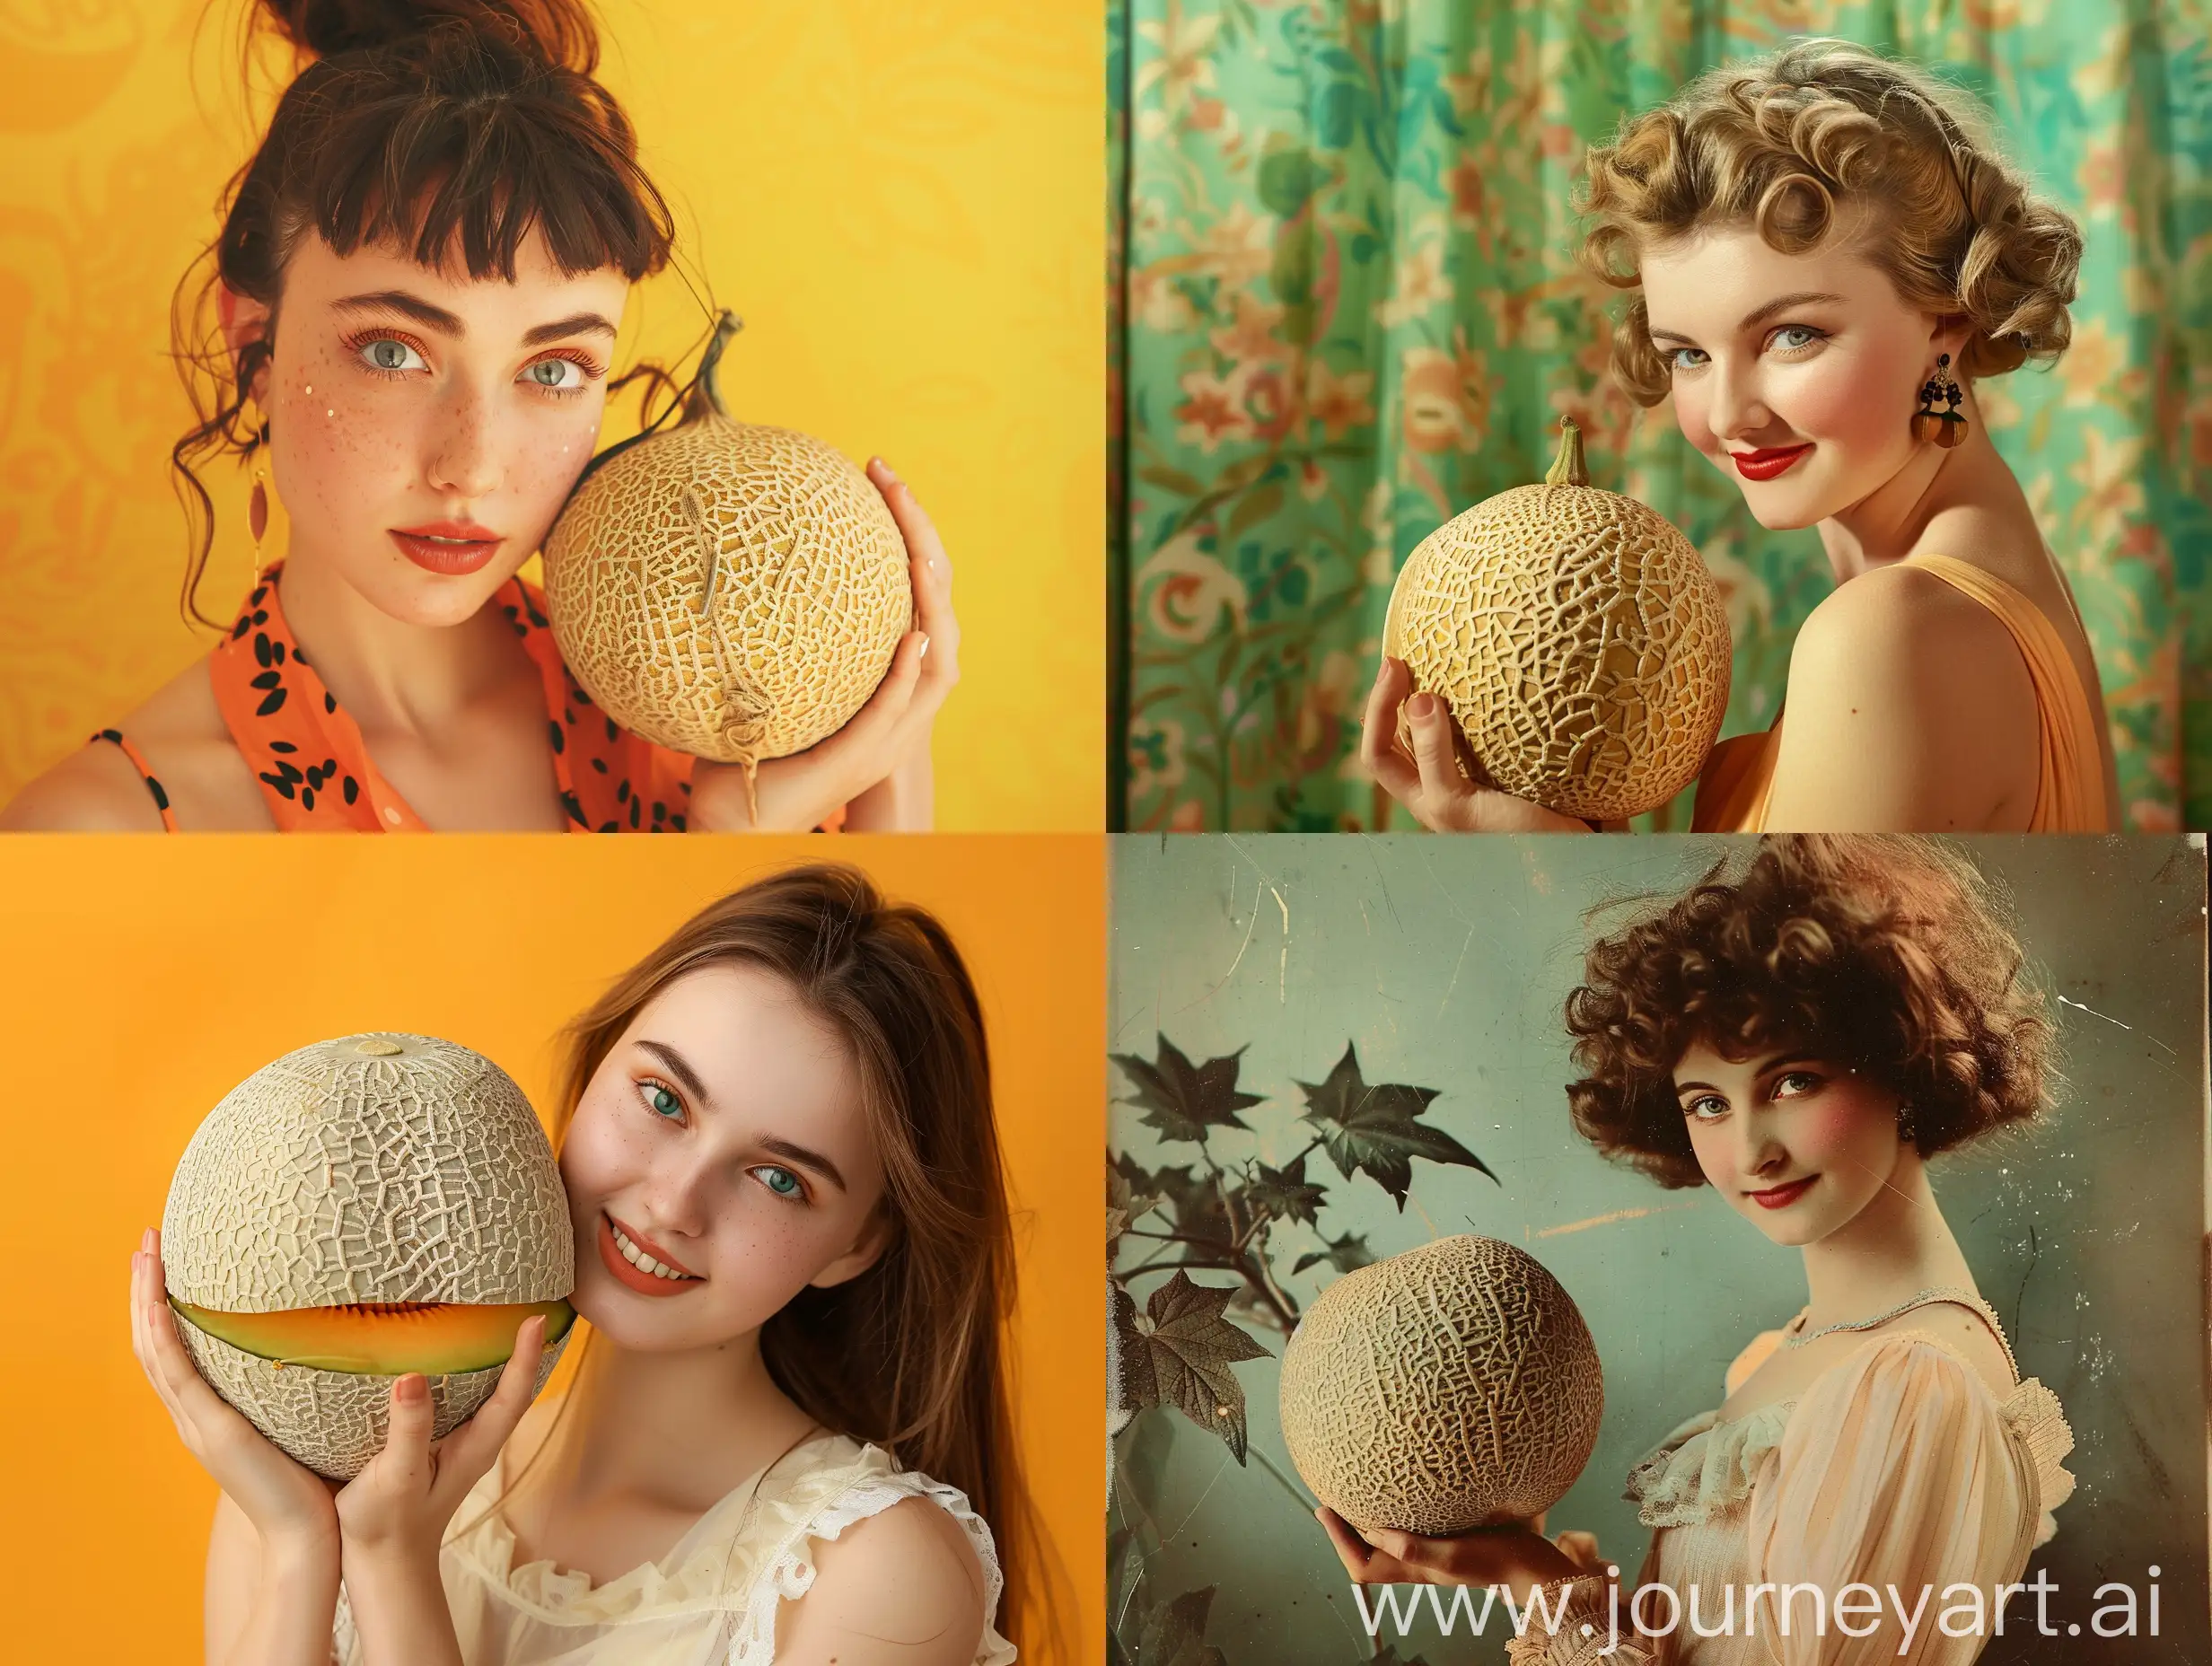 Elegant-Woman-Posing-with-Fresh-Cantaloupe-Fruit